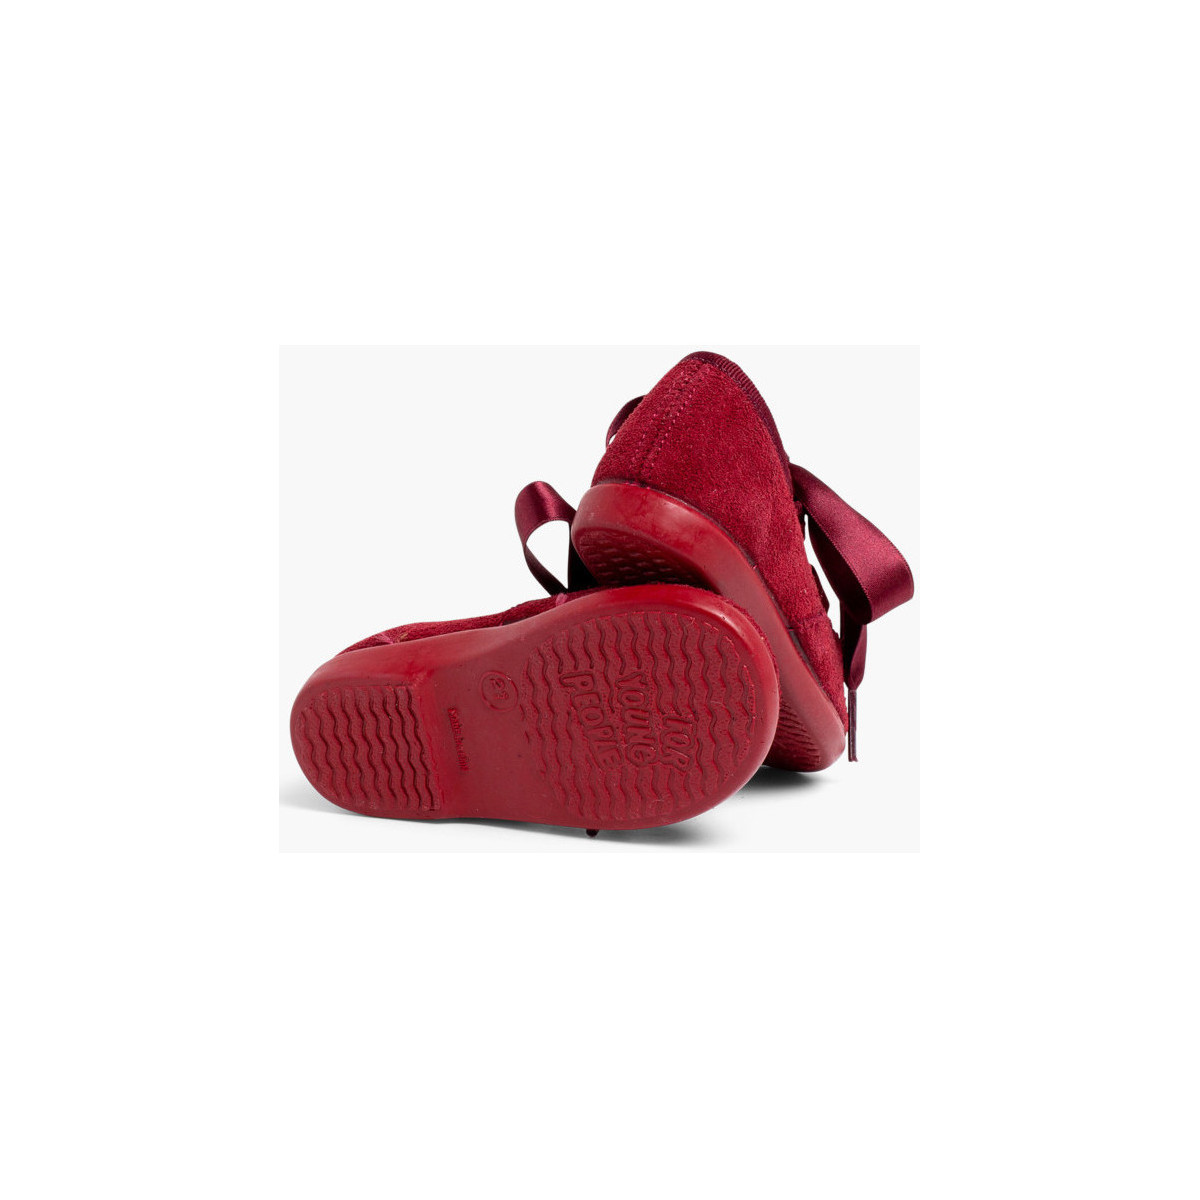 Pisamonas Bordeaux Chaussures anglaises enfants en suède xfS7sM0i